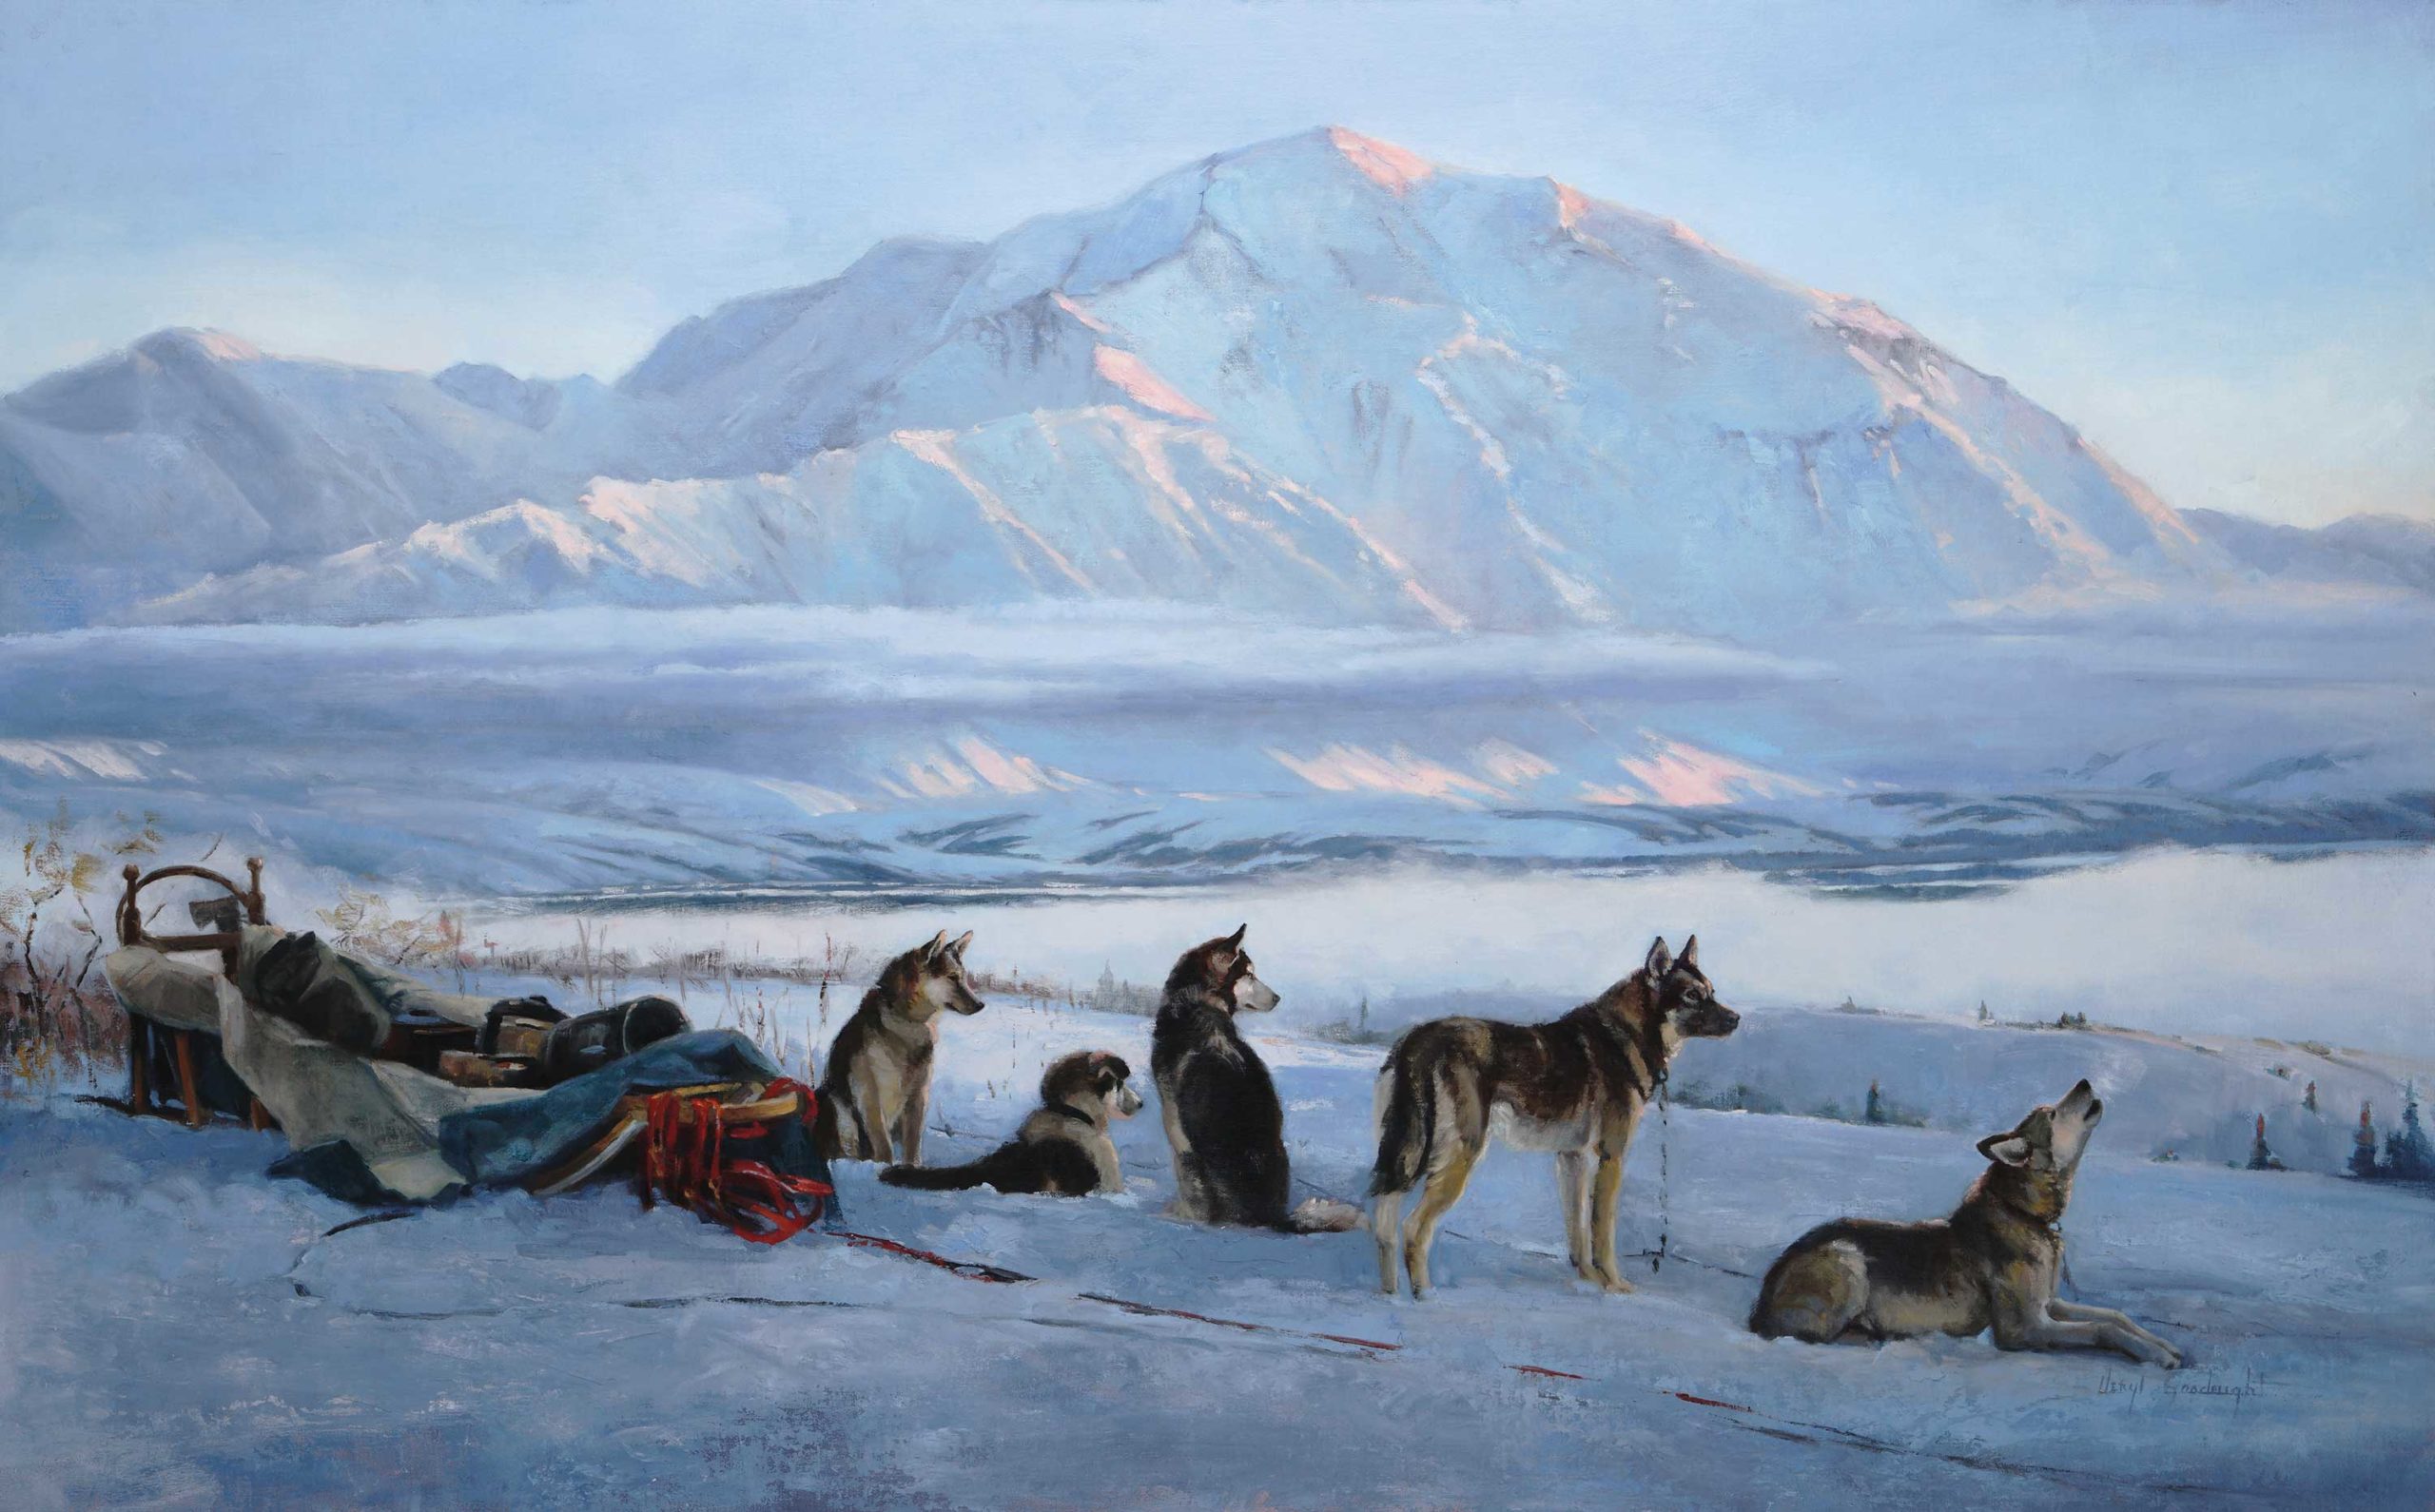 Veryl Goodnight (b. 1947), "Under the Spell of Denali," [Denali National Park & Preserve, Alaska], 2019, oil on linen, 30 x 48 in., Veryl Goodnight Gallery (Mancos, Colorado)